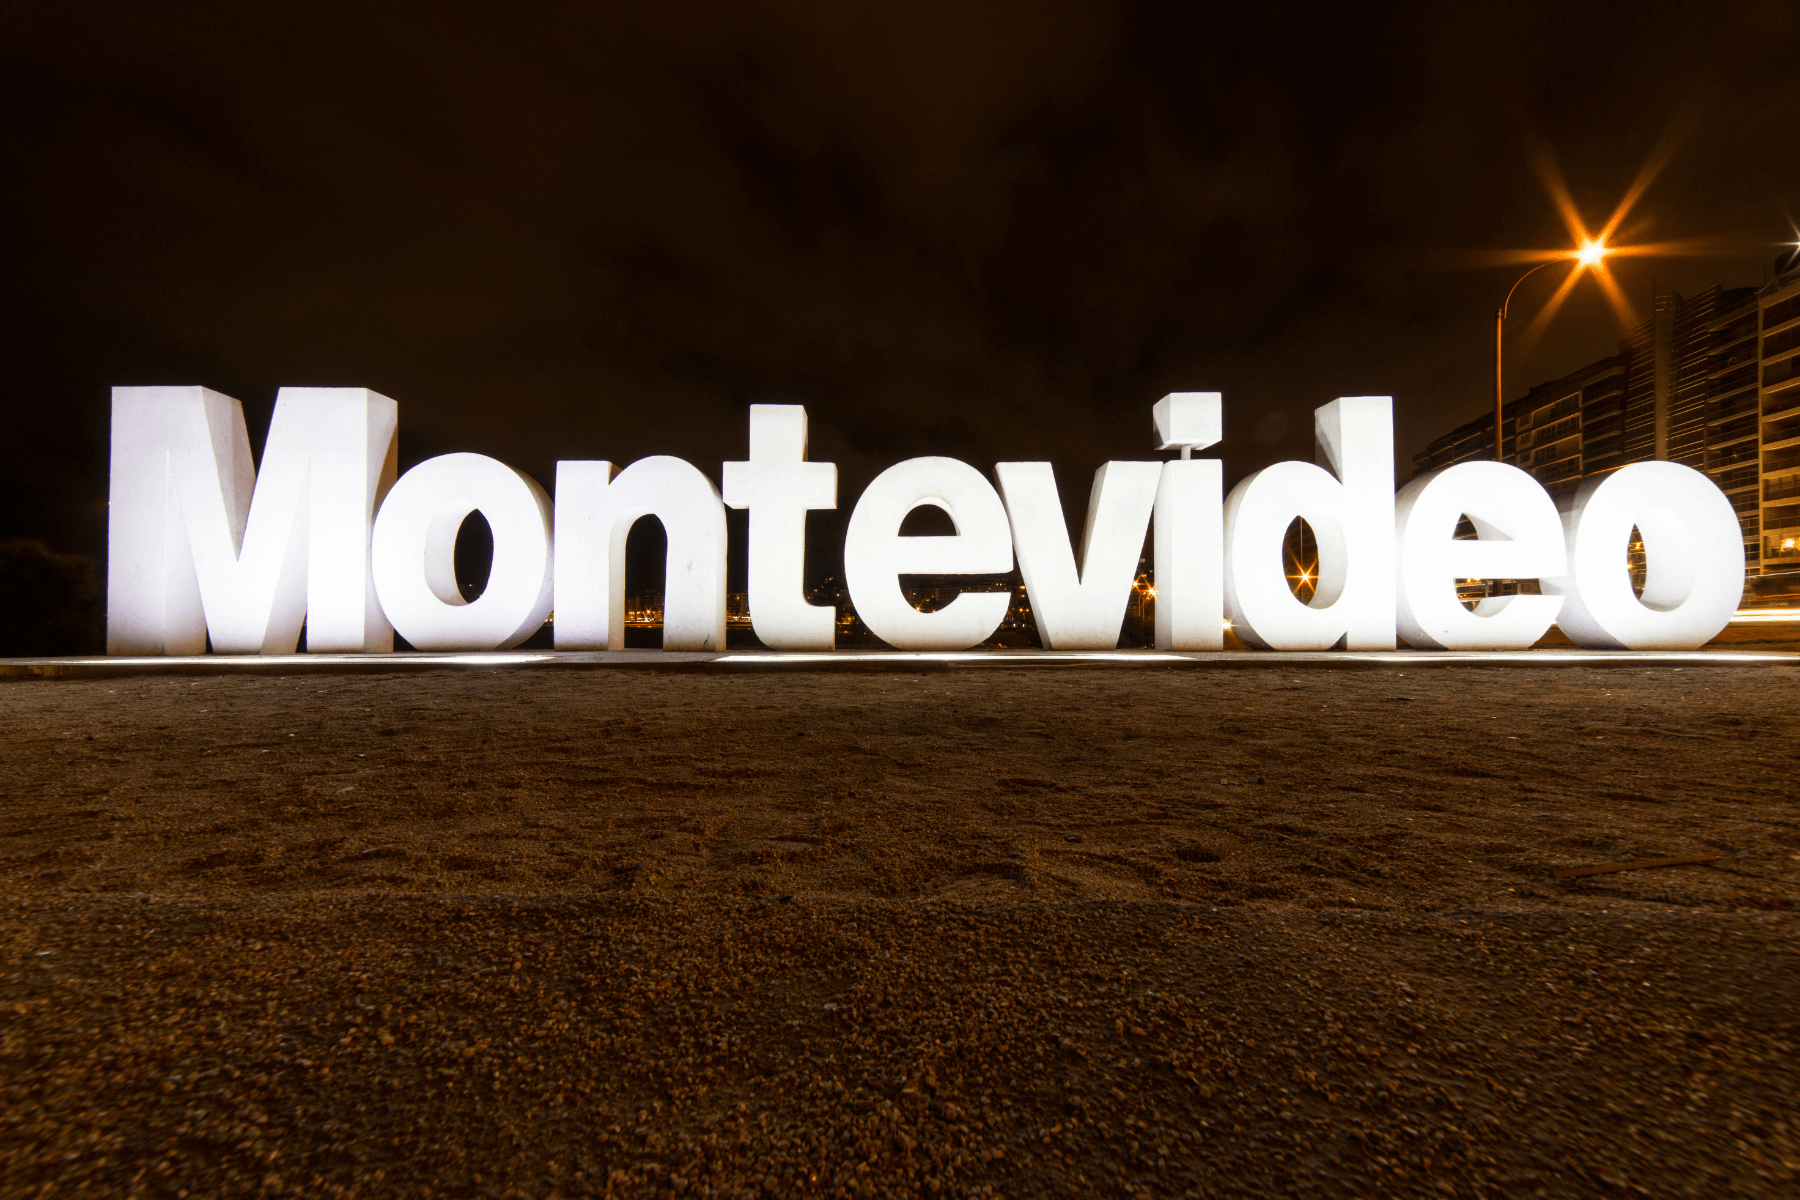 Montevideo sign in Uruguay